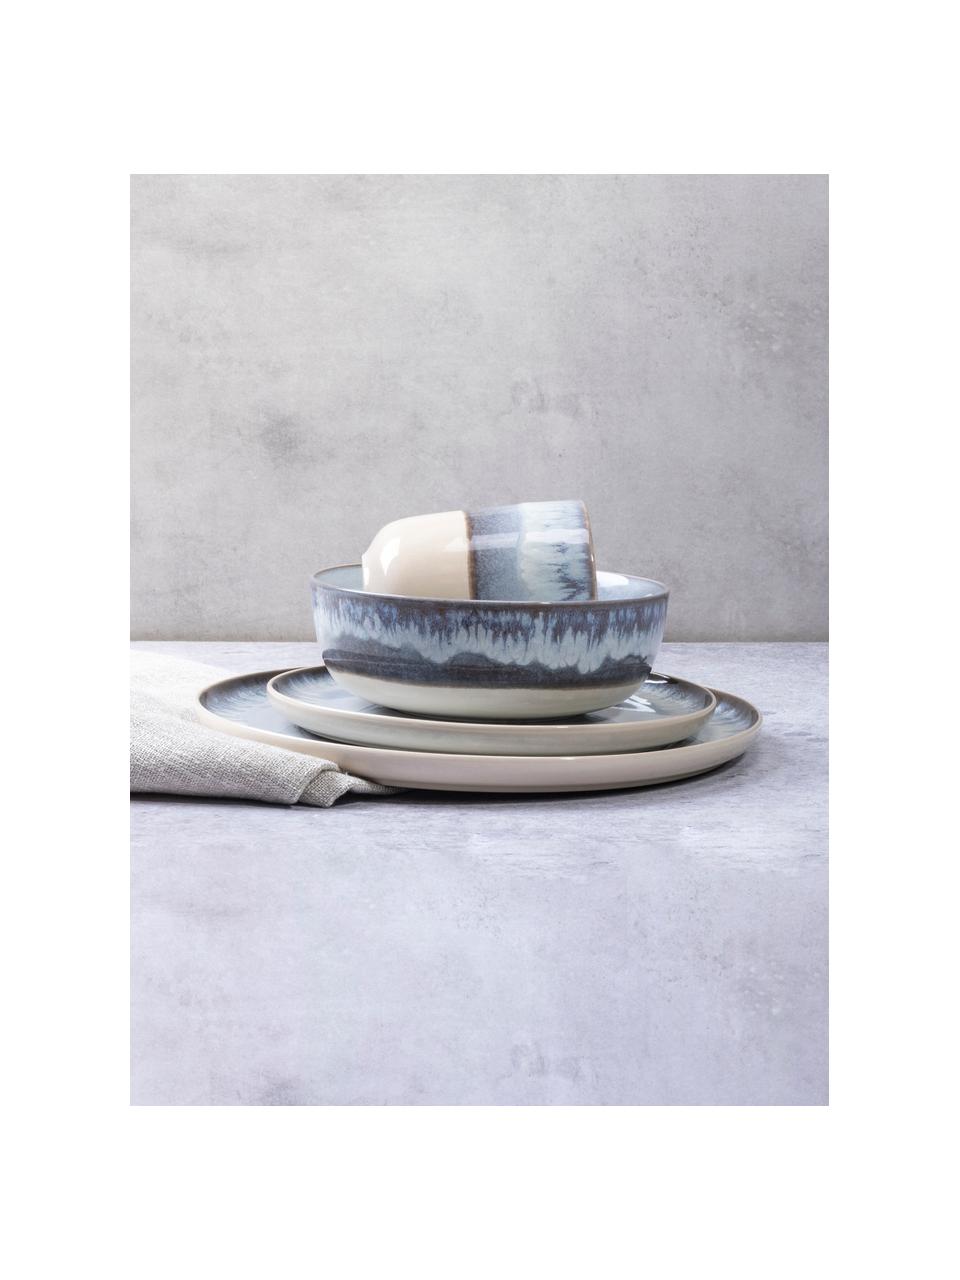 Piatto piano con gradiente Inspiration 2 pz, Ceramica, Blu, beige chiaro, Ø 27 cm